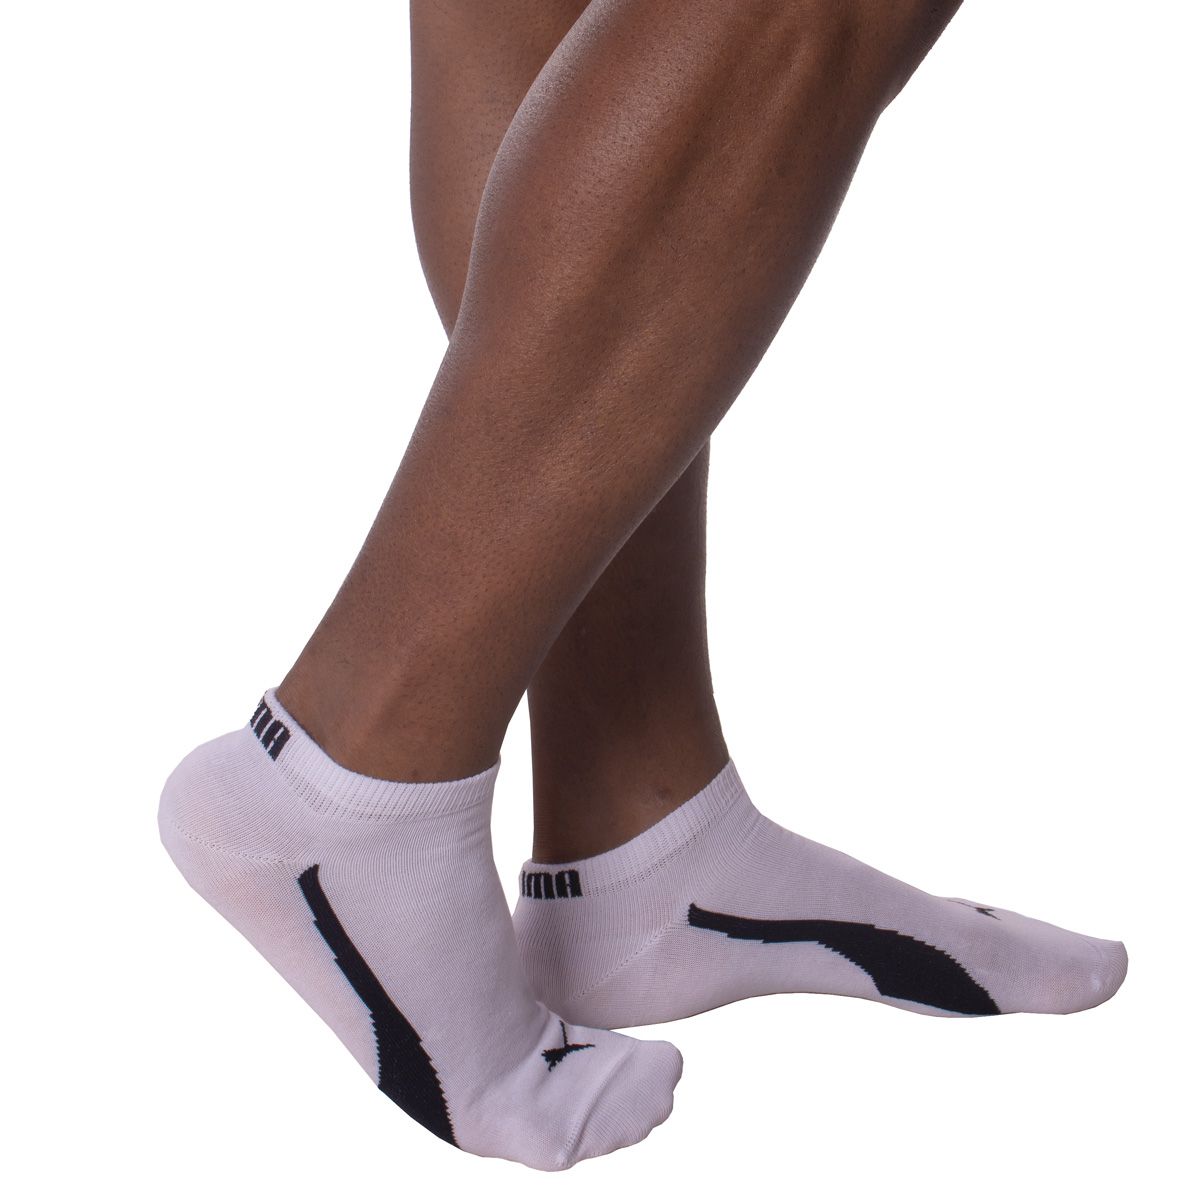 Kit com 3 pares de meias sapatilha esportiva masculina Puma  - Bra Lingerie